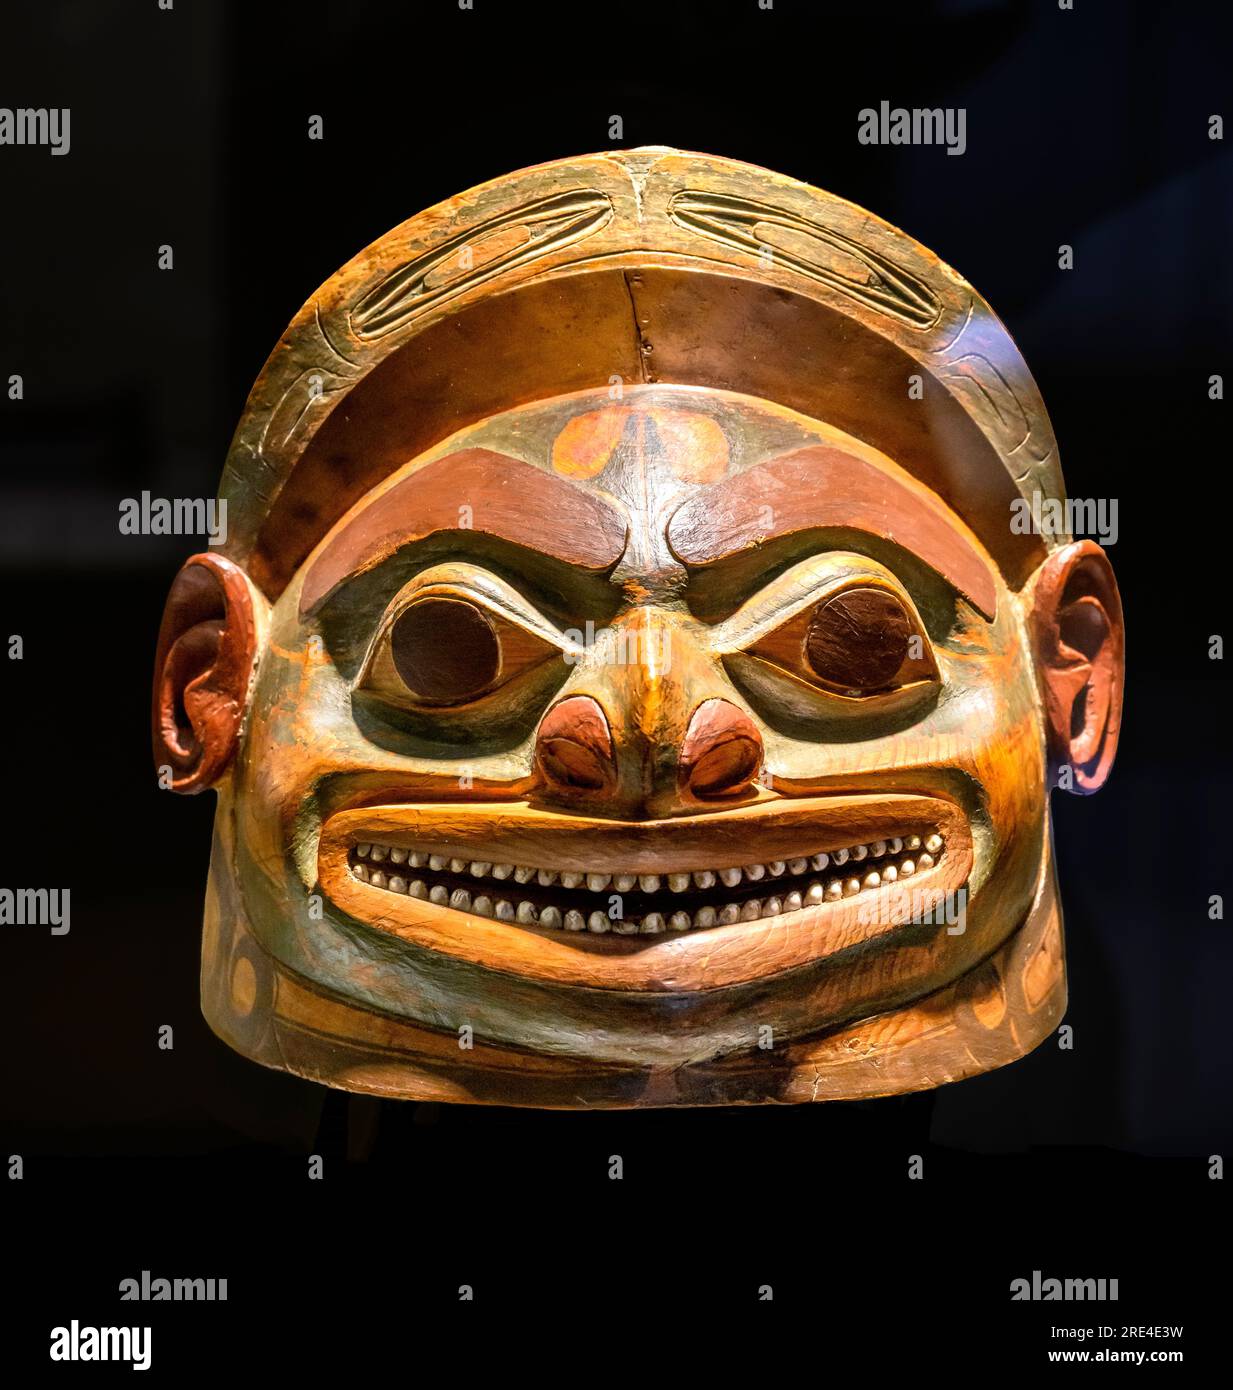 Casque avec une représentation sculptée d'un visage, en bois, cuir, coquille et cuivre. Indiens Tlingit, côte nord-ouest de l'Amérique du Nord. 18e centime Banque D'Images